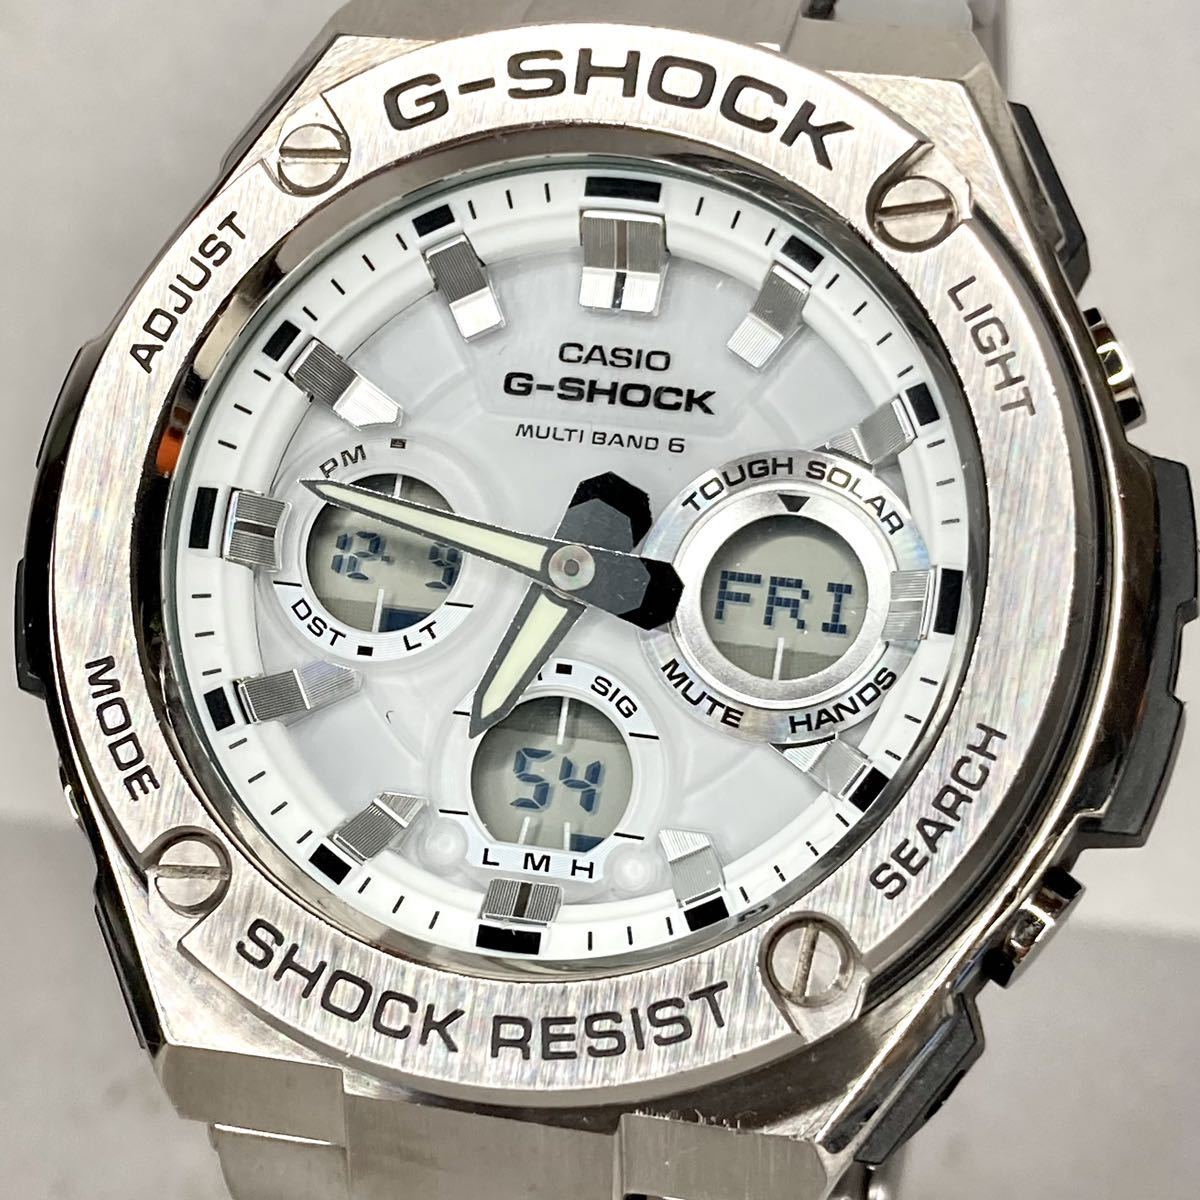 クリアランス セール 【新品・未使用】FCRB TEAM G-SHOCK 腕時計